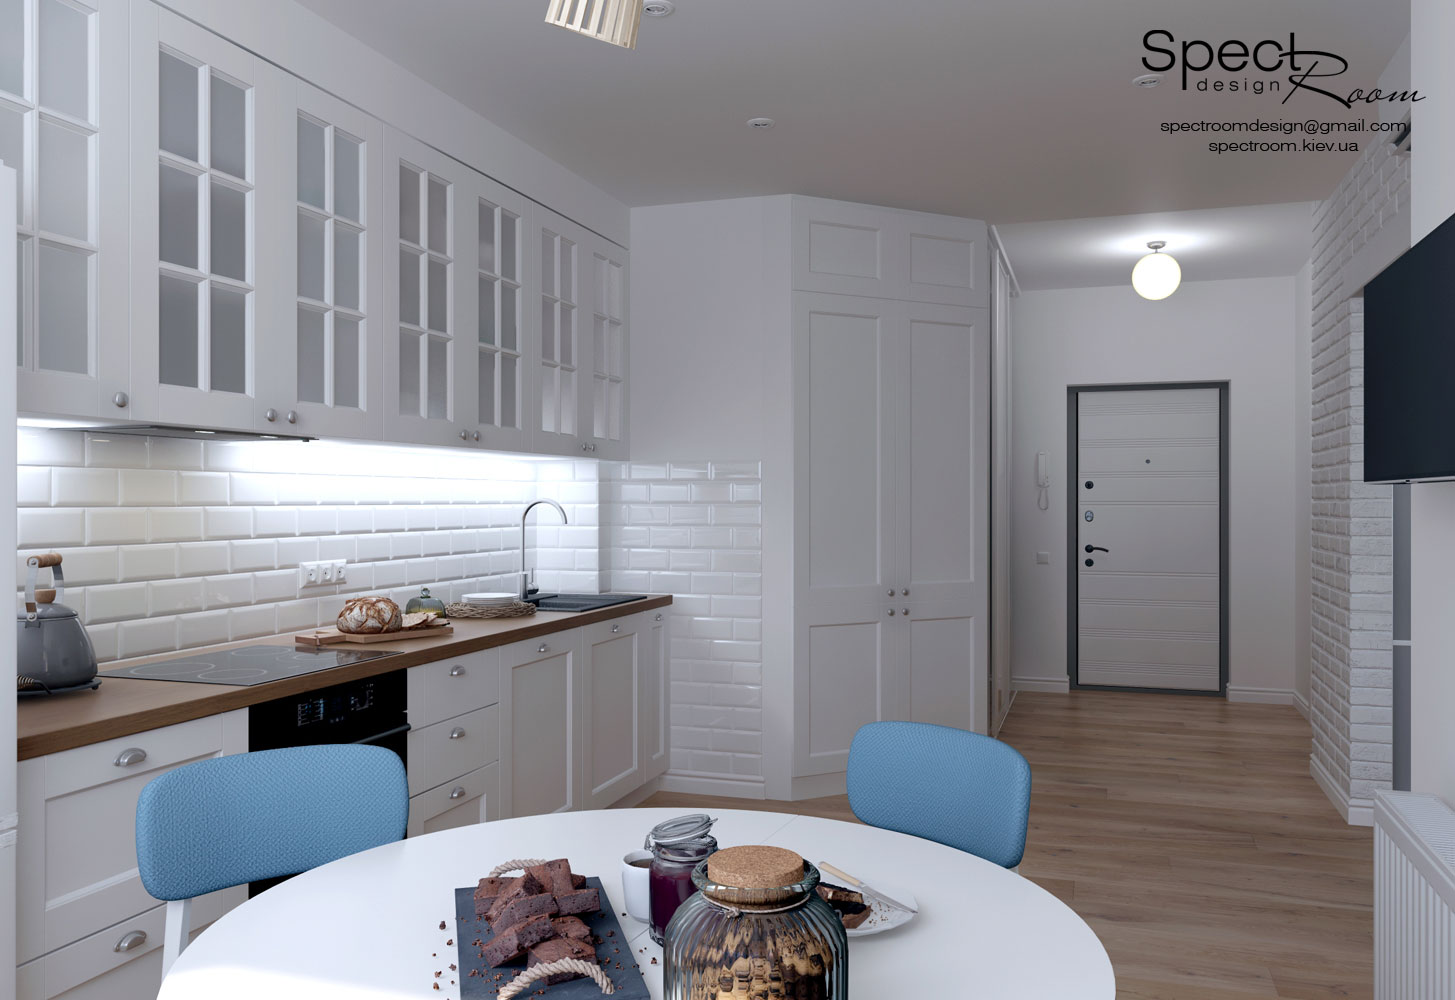 Скандинавський стиль в однокімнатній квартирі  - Spectroom